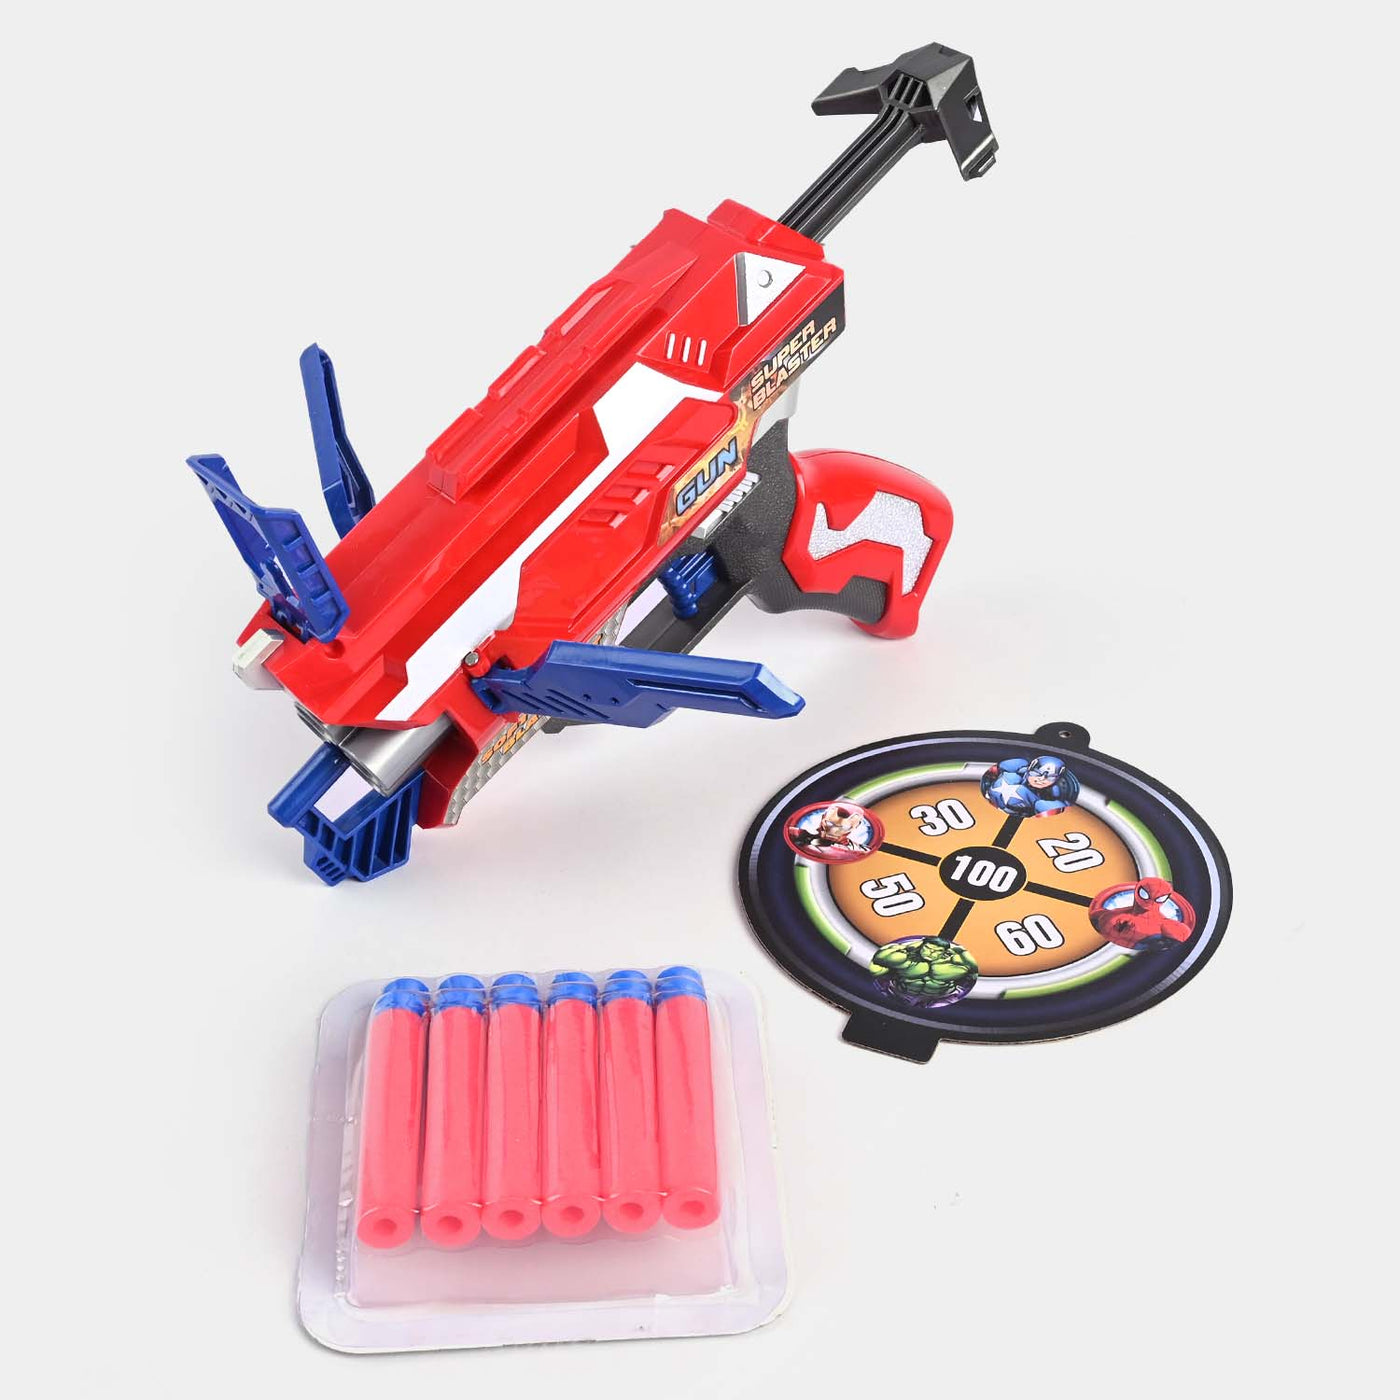 Soft Bullet Blaster Gun Toy For Kids